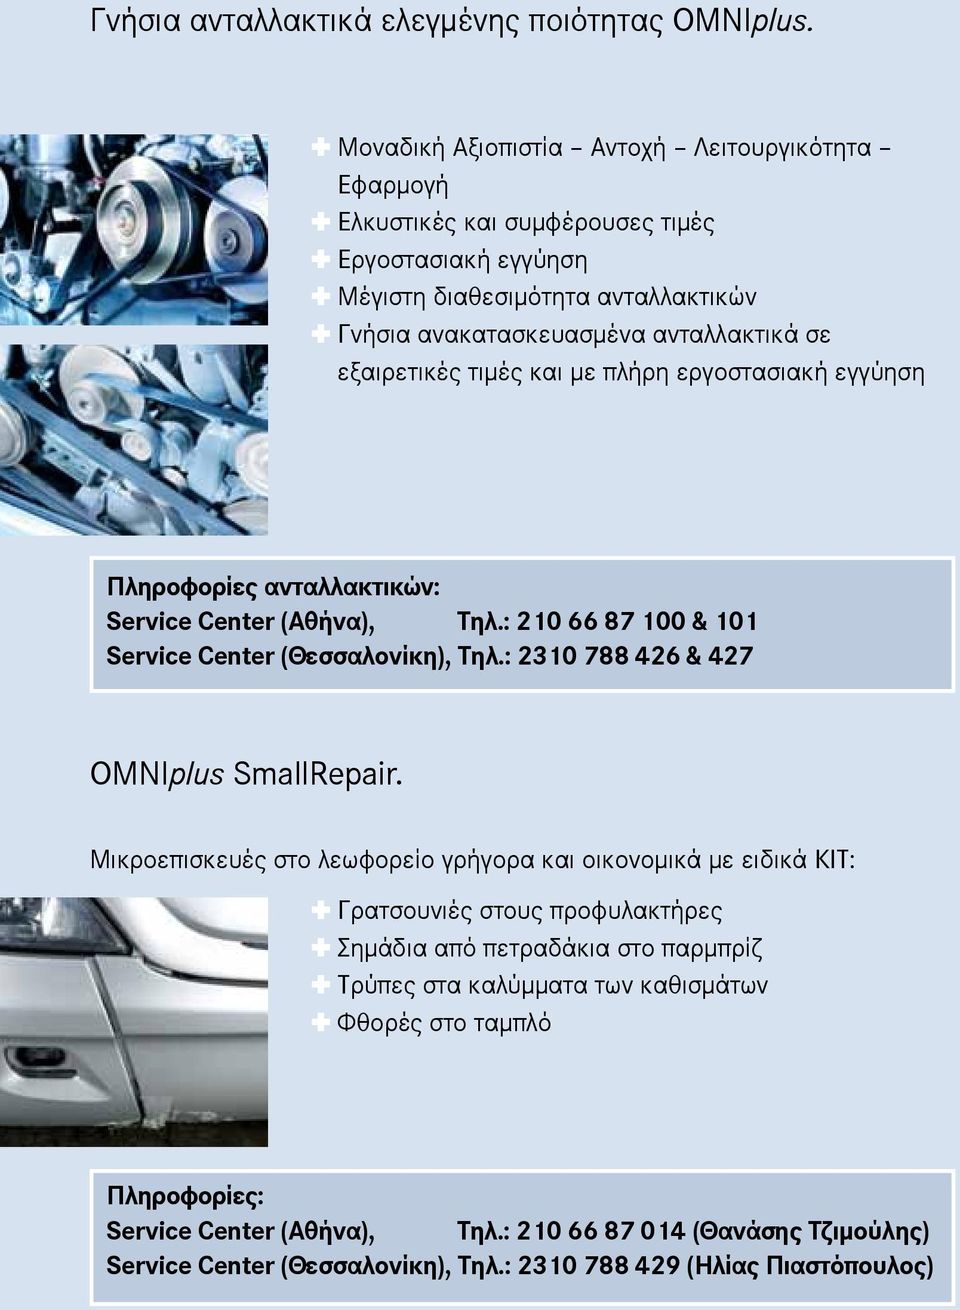 εξαιρετικές τιμές και με πλήρη εργοστασιακή εγγύηση Πληροφορίες ανταλλακτικών: Service Center (Αθήνα), Τηλ.: 210 66 87 100 & 101 Service Center (Θεσσαλονίκη), Τηλ.